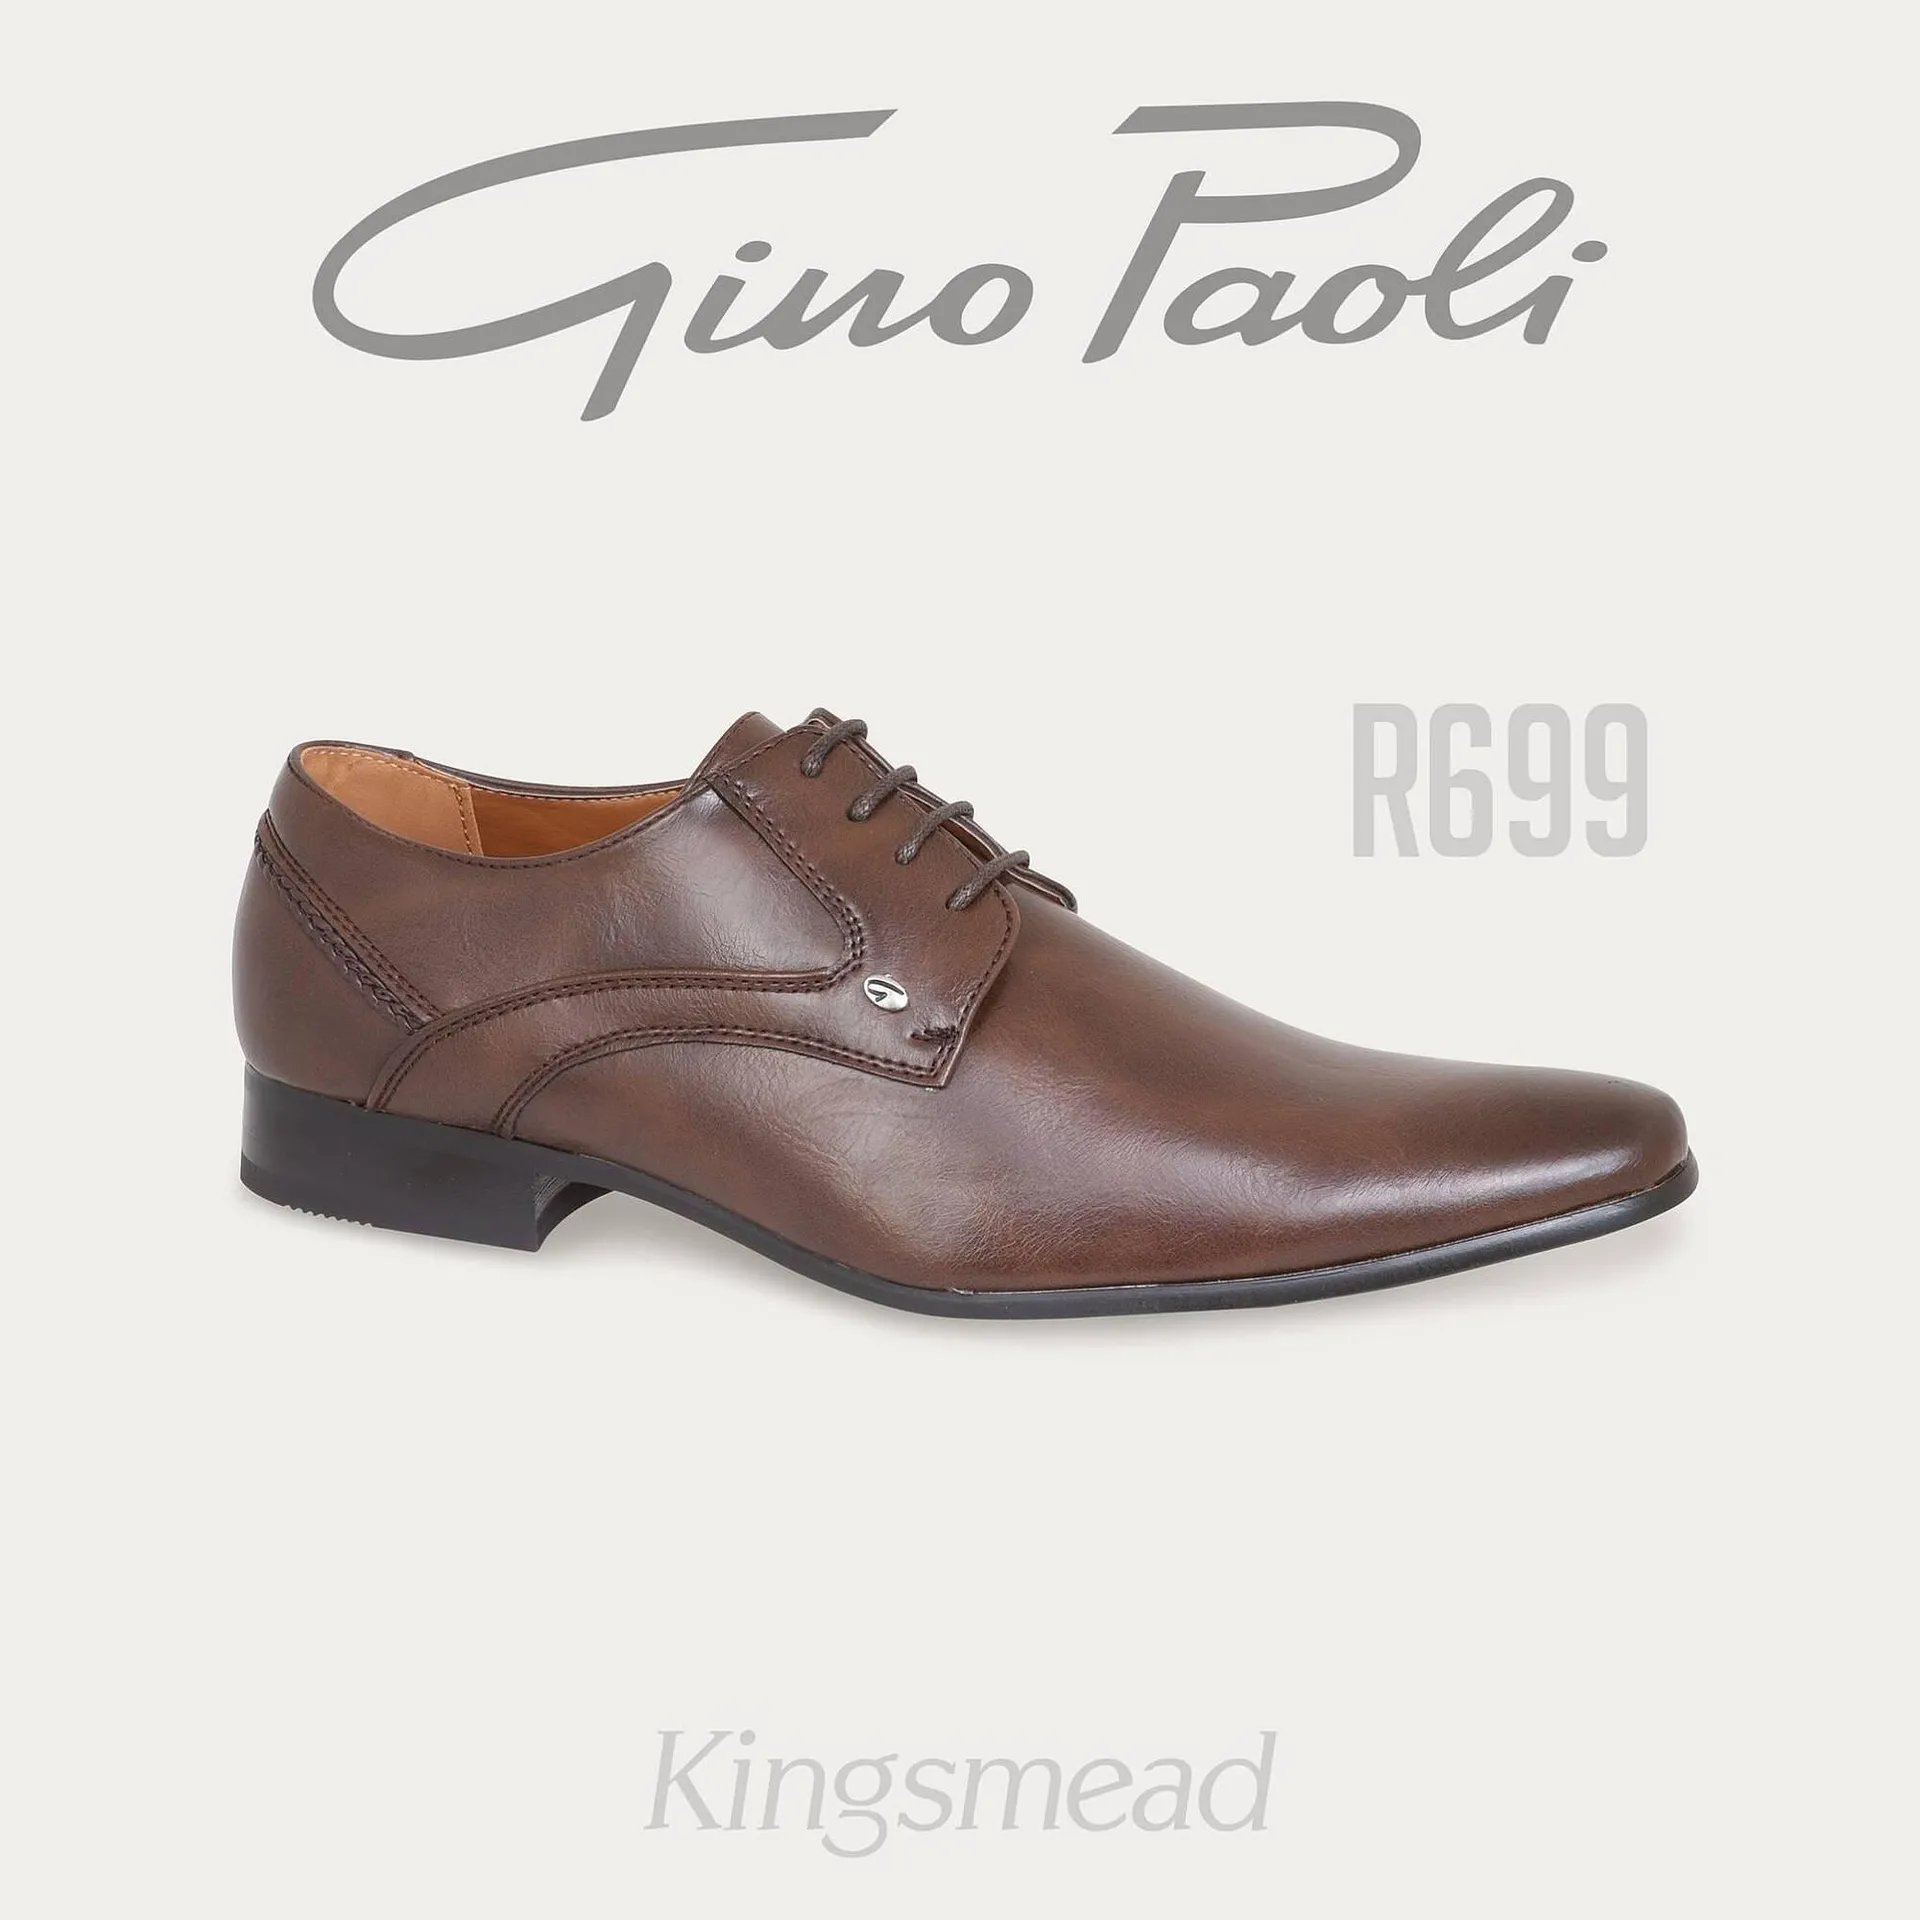 Kingsmead Shoes catalogue - 2